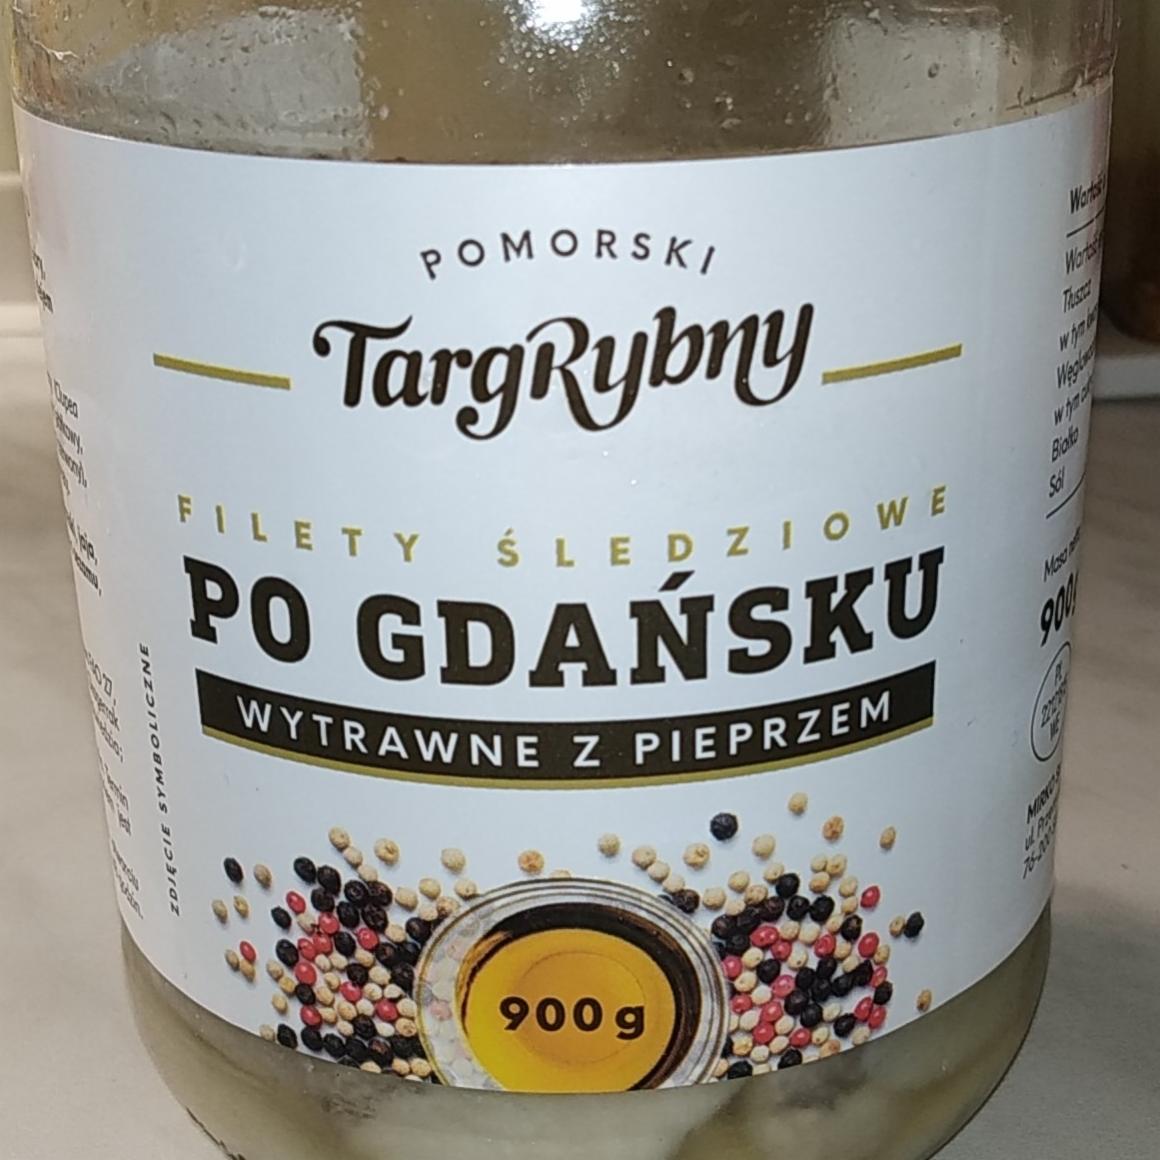 Fotografie - Filety śledziowe po Gdańsku z pieprzem Pomorski targ rybny